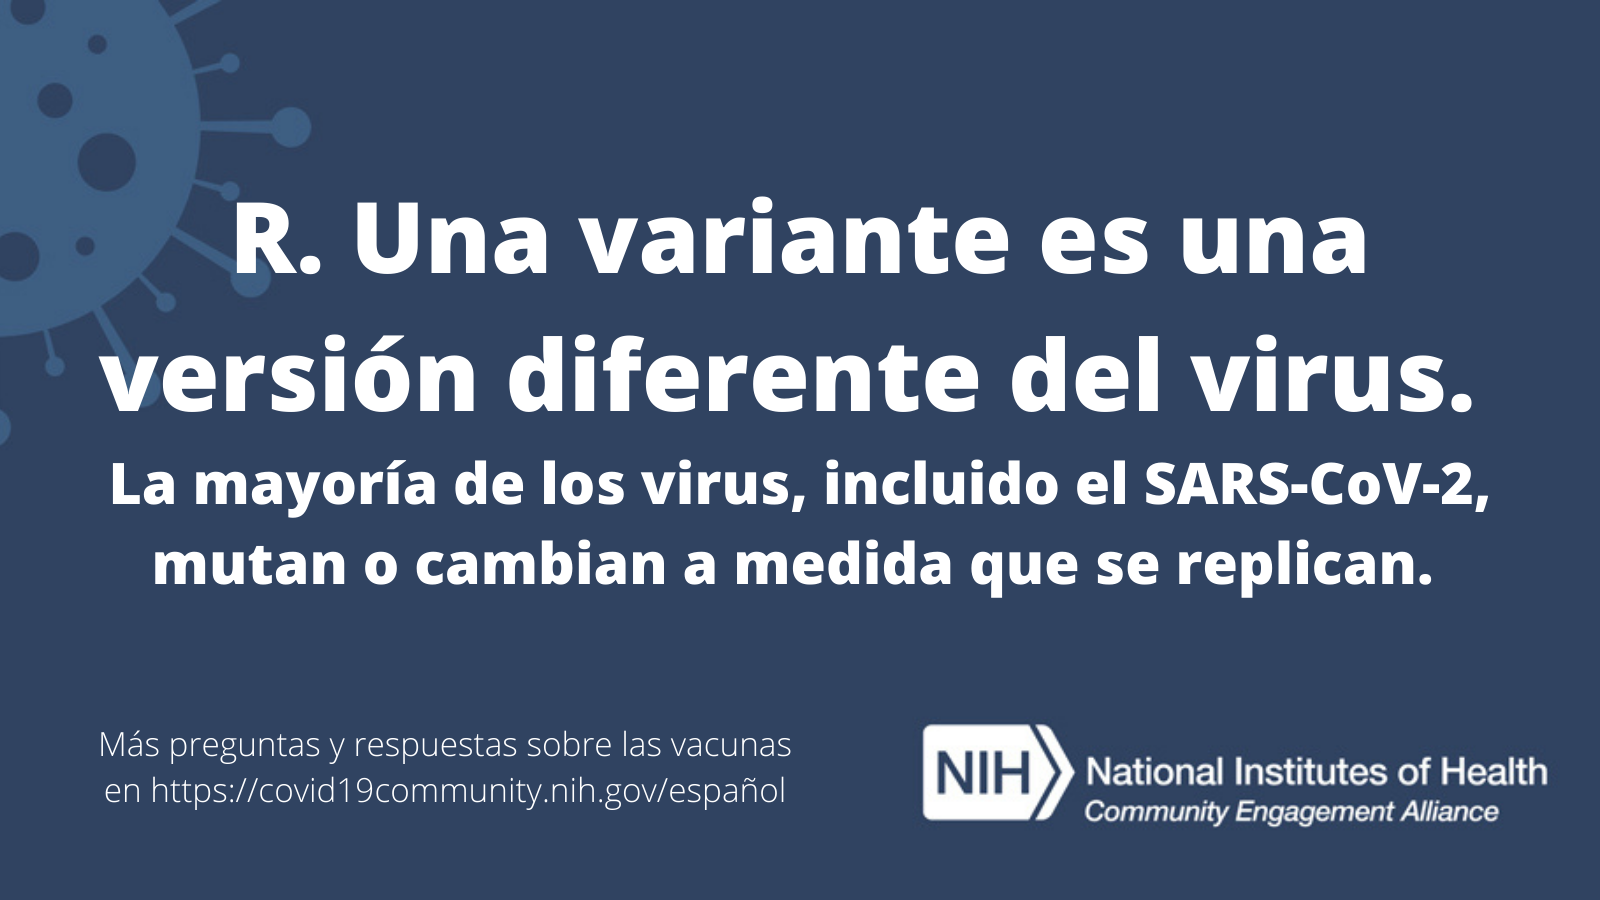 R. Una variante es una versión diferente del virus. La mayoría de los virus, incluido el SARS-CoV-2, mutan o cambian a medida que se replican. Más preguntas y respuestas sobre las vacunas en covid19community.nih.gov/español.